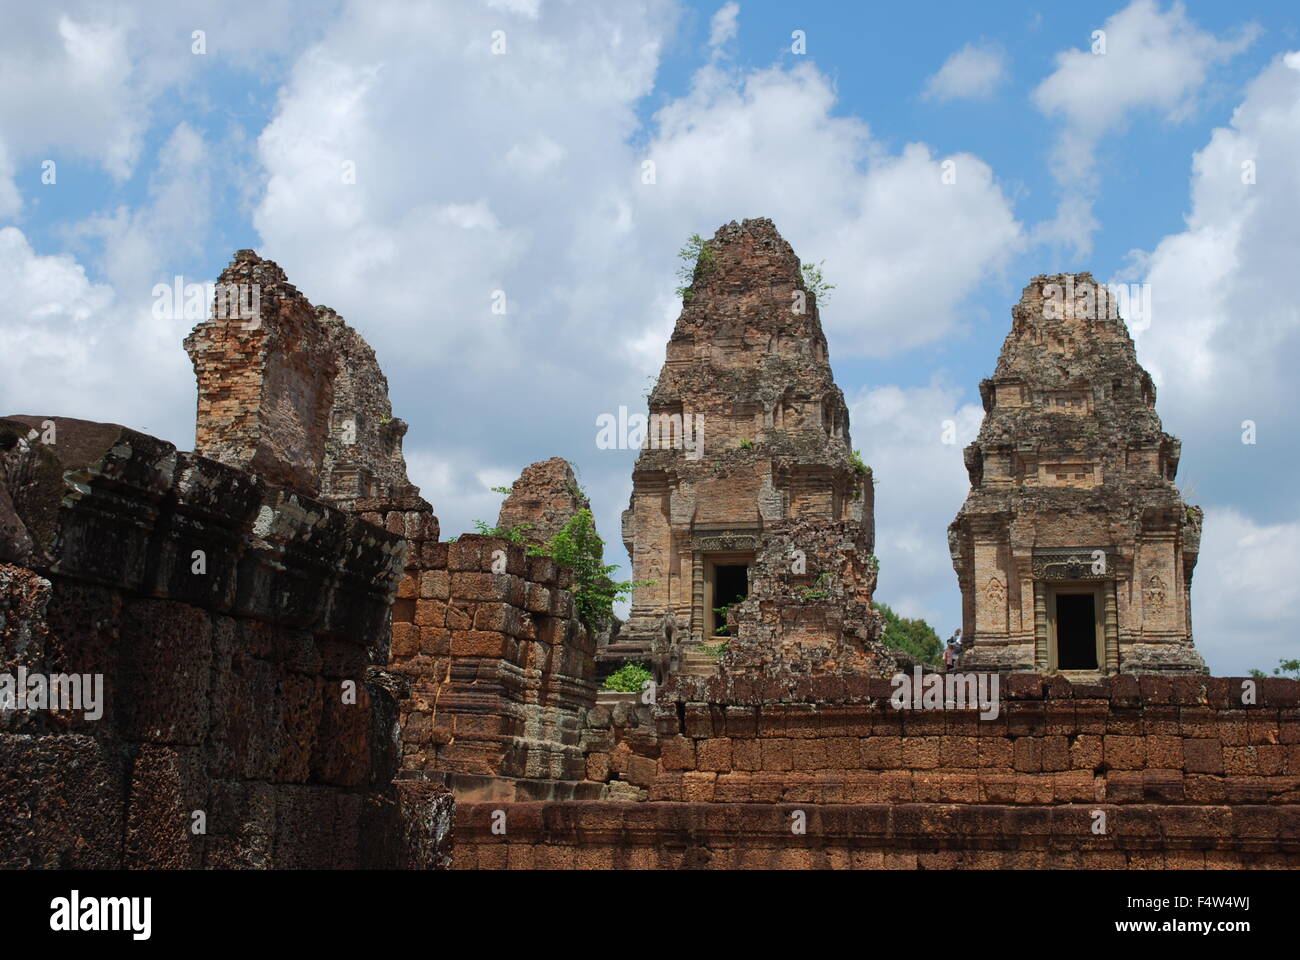 Ost-Mebon großen, dreistöckigen Tempel-Berg von fünf Türmen gekrönt. Angkor archäologischer Park, Siem Reap, Kambodscha. Stockfoto